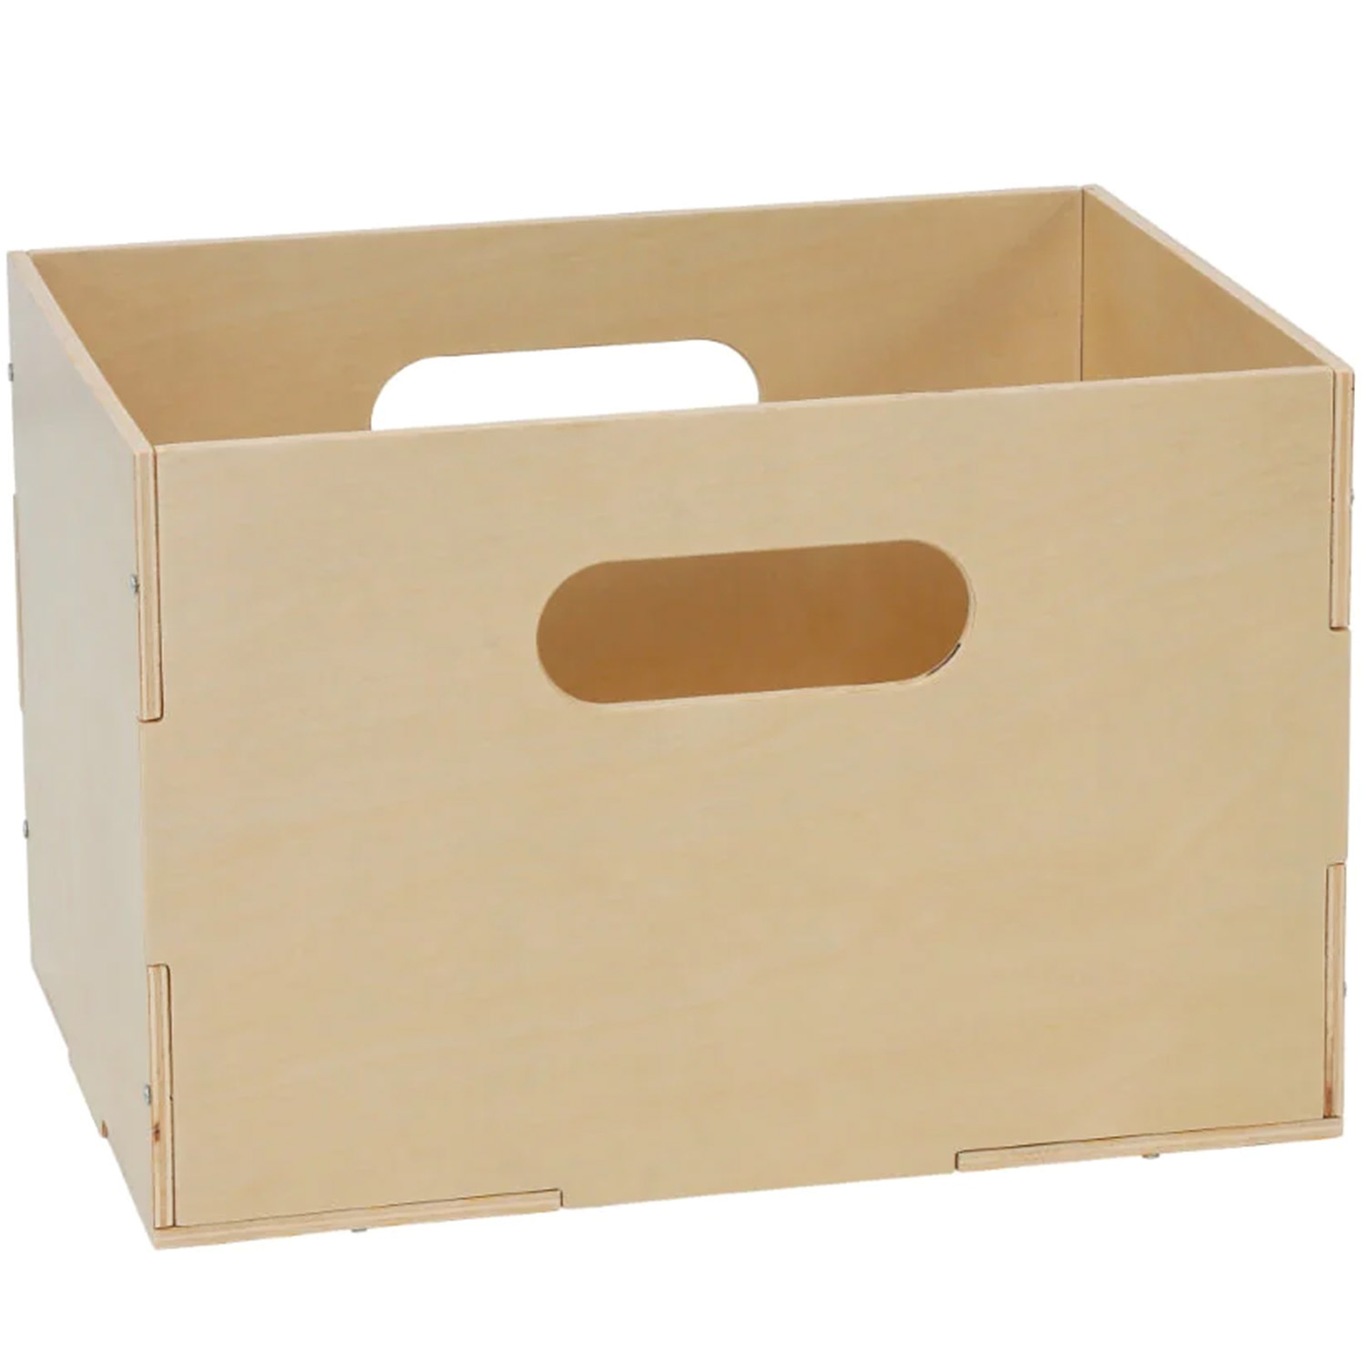 Kiddo Storage Box 24x33.5 cm, Birch